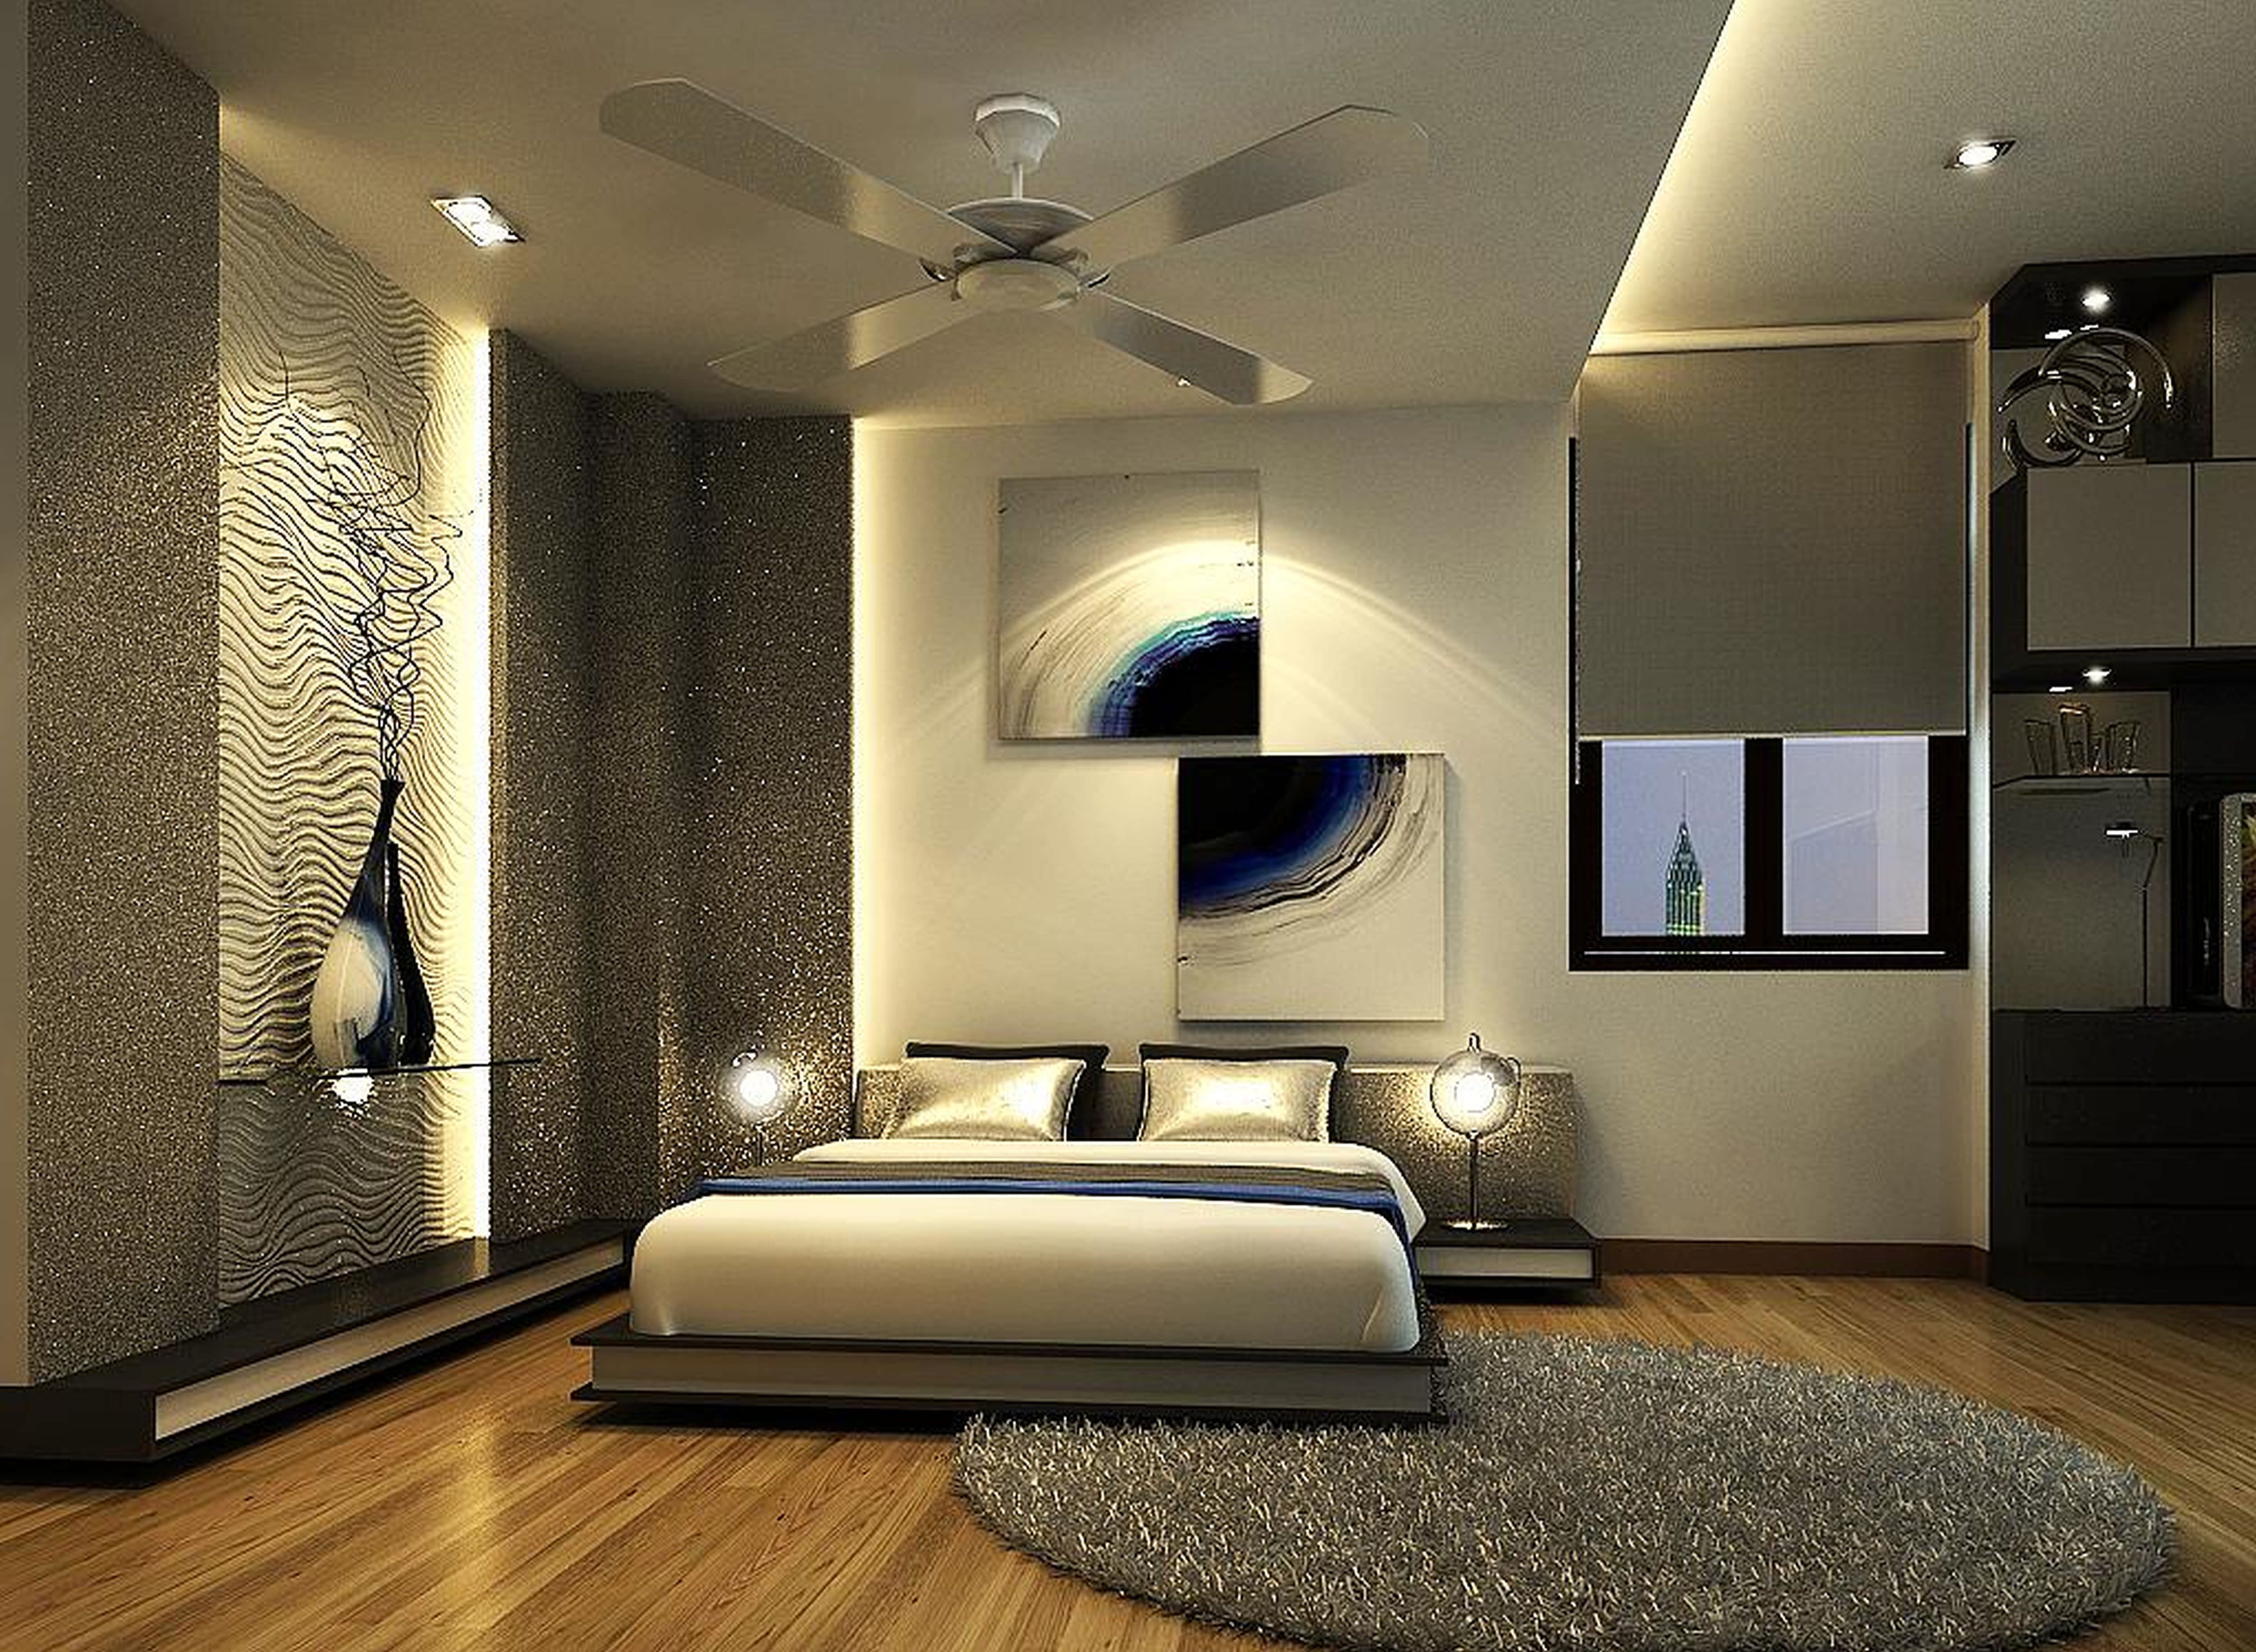 15+ Royal Bedroom Designs, Decorating Ideas | Design Trends - Premium